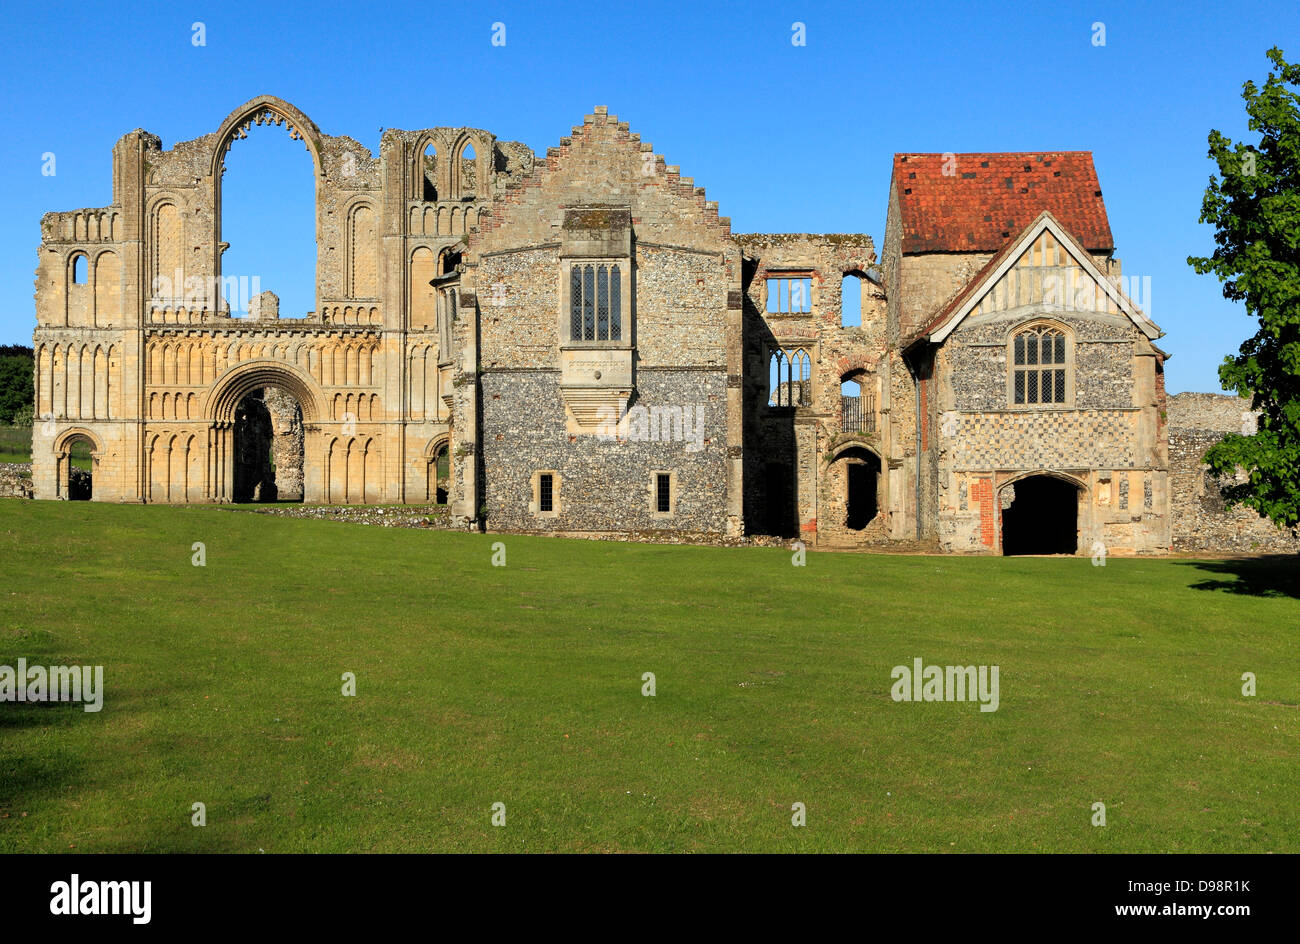 Castle Acre Prieuré, Norfolk, à l'ouest de l'église prieurale de l'avant et de l'hébergement, les Prieurs du monastère médiéval de monastères prieurés Anglais Banque D'Images